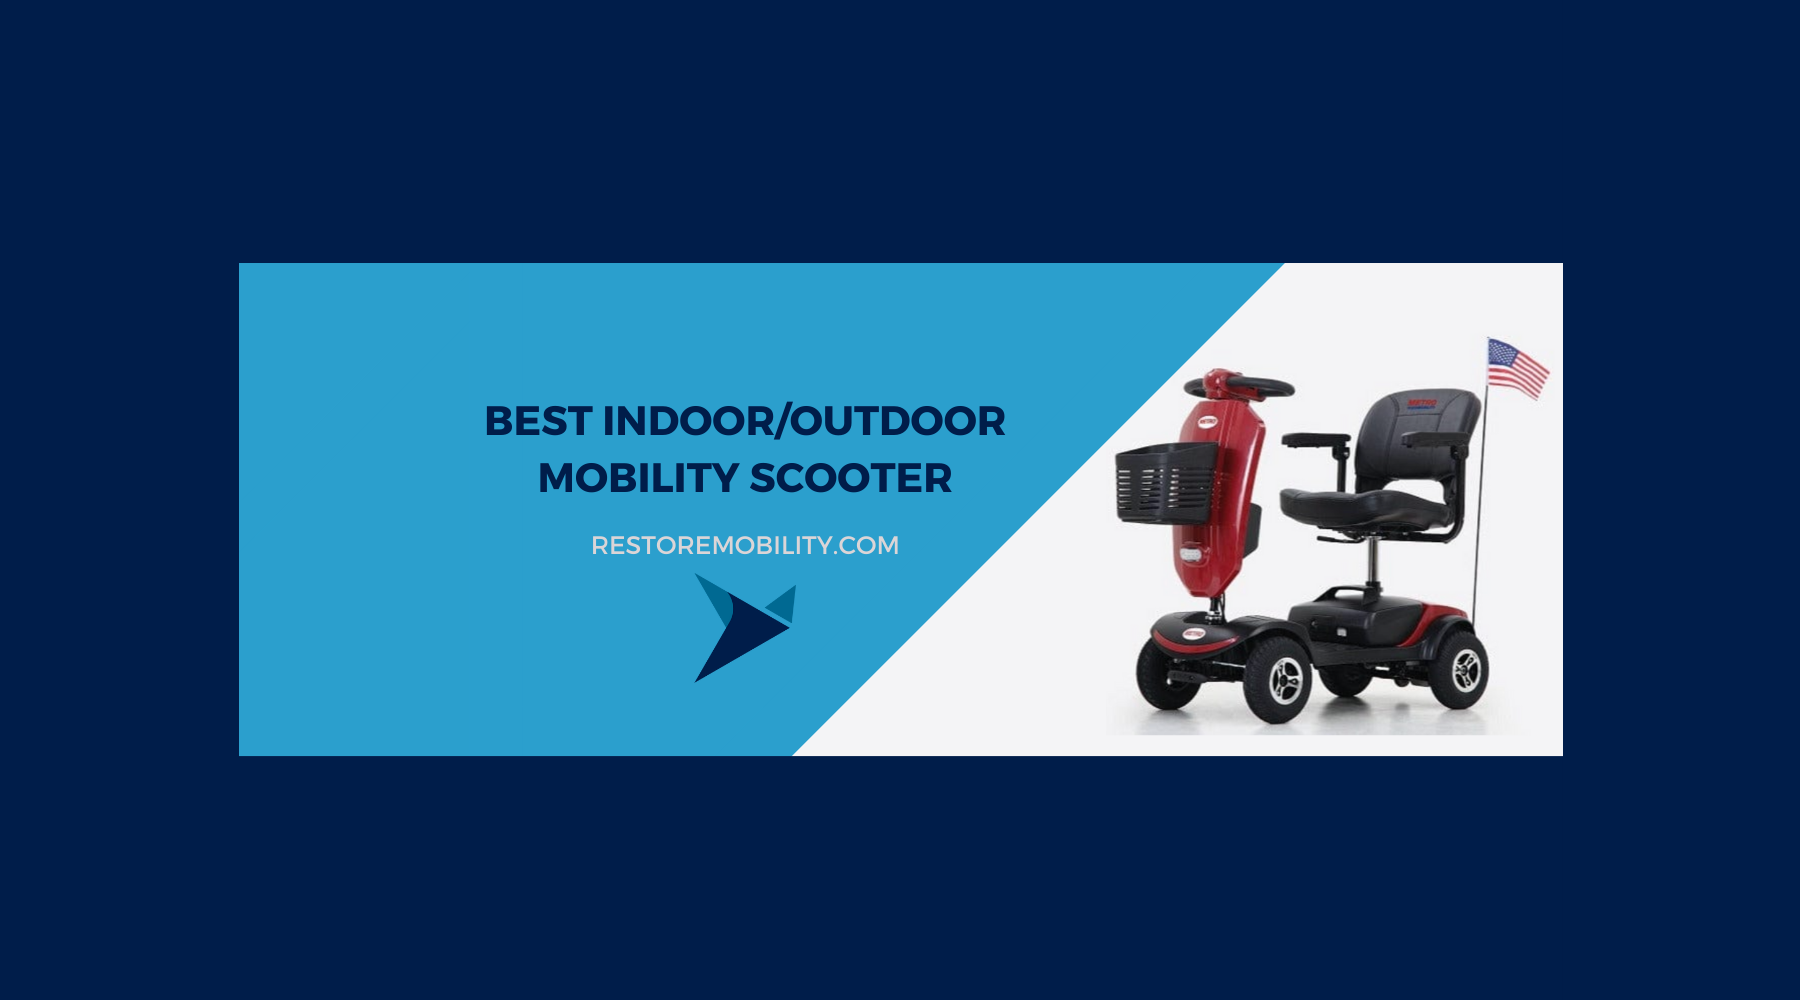 Best Indoor Outdoor Mobility Scooter: Top Picks